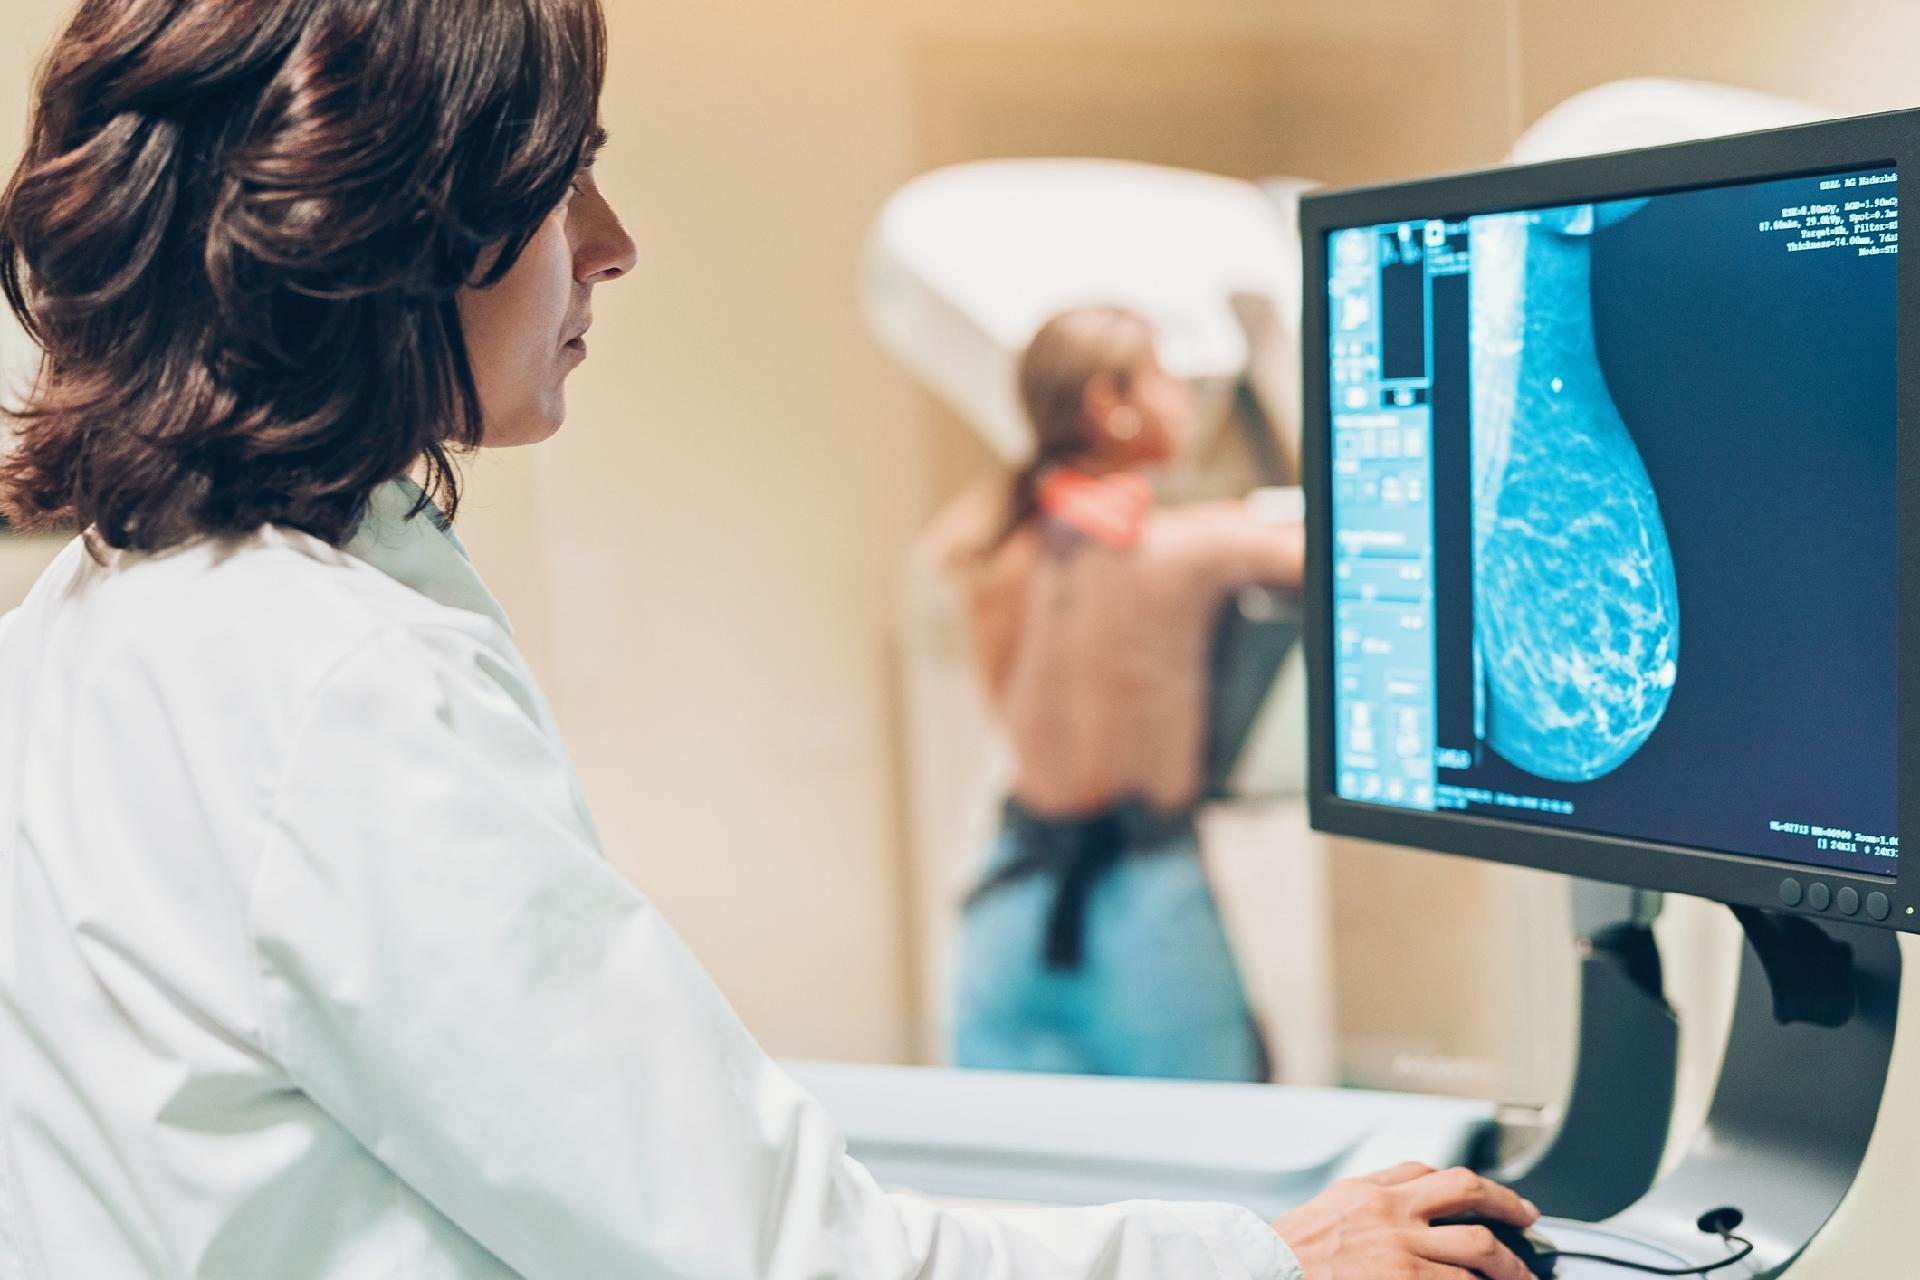 Serra registra mais de 1.283 mamografias agendadas pelo site